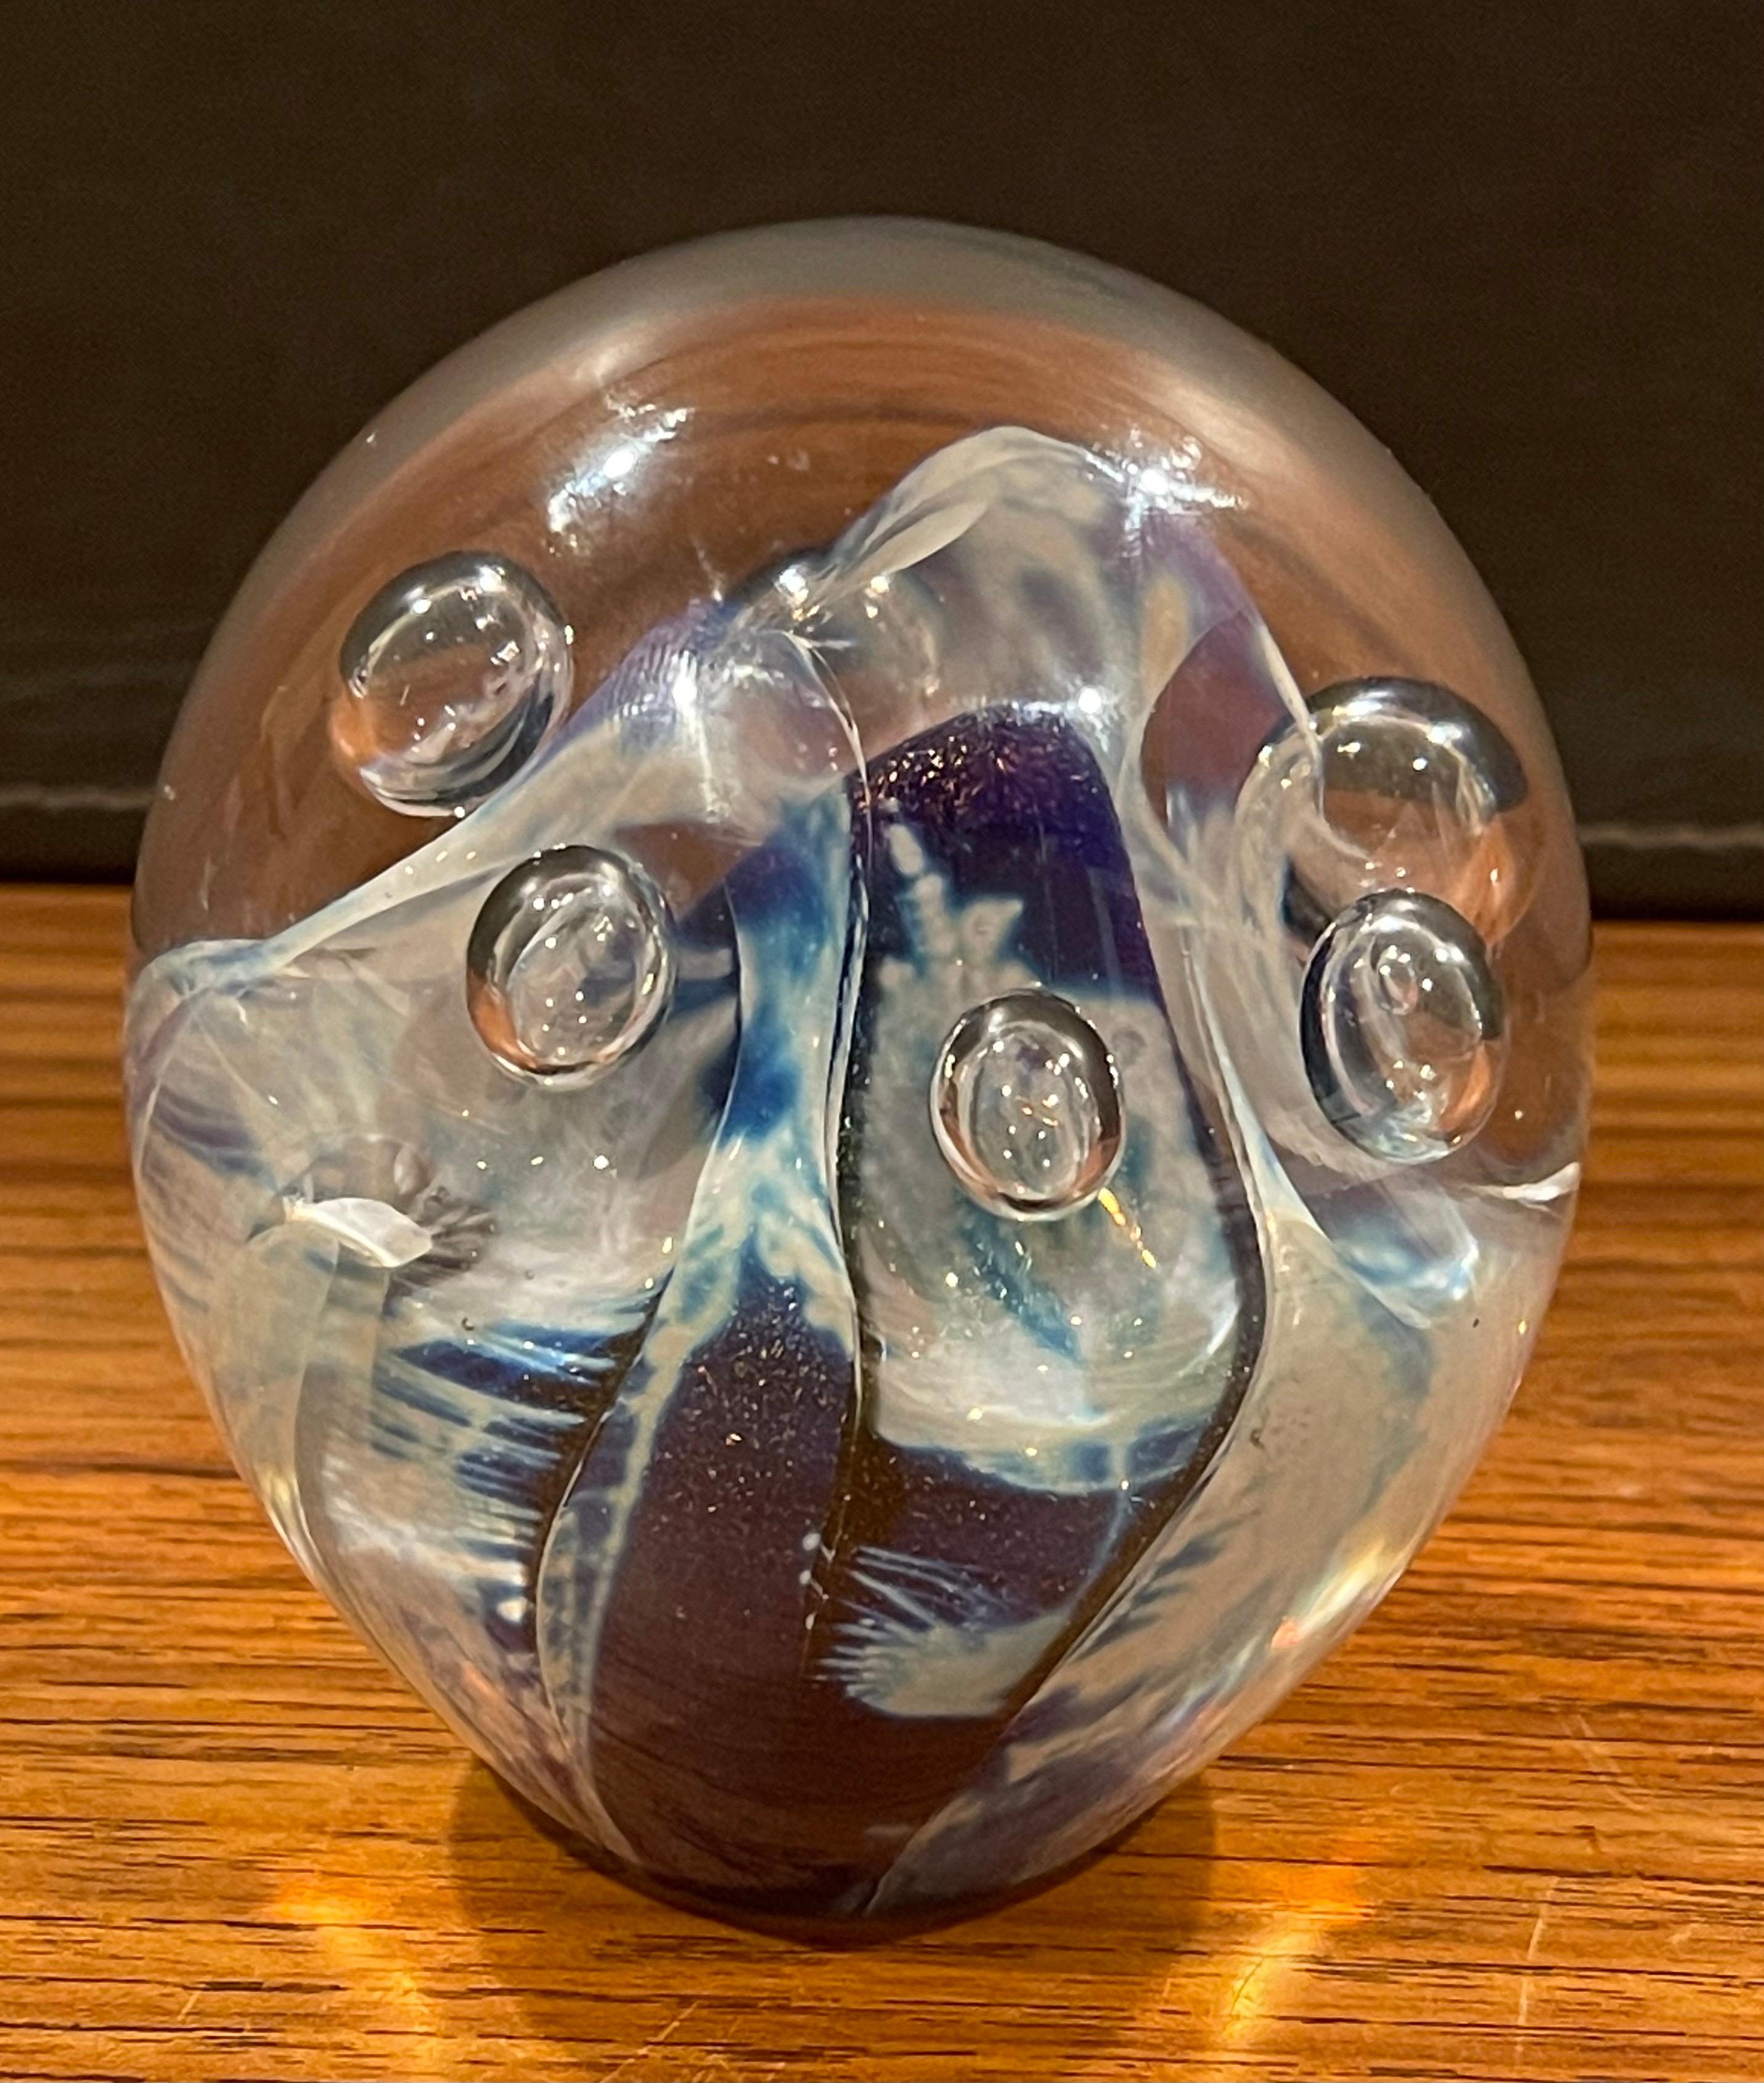 Une merveilleuse sculpture orbe en verre d'art ou presse-papiers par Robert Eickholt, vers 1990. L'orbe est recouvert à l'intérieur de tourbillons blancs et bleus et présente six bulles d'air internes. La pièce est signée et datée par l'artiste sur